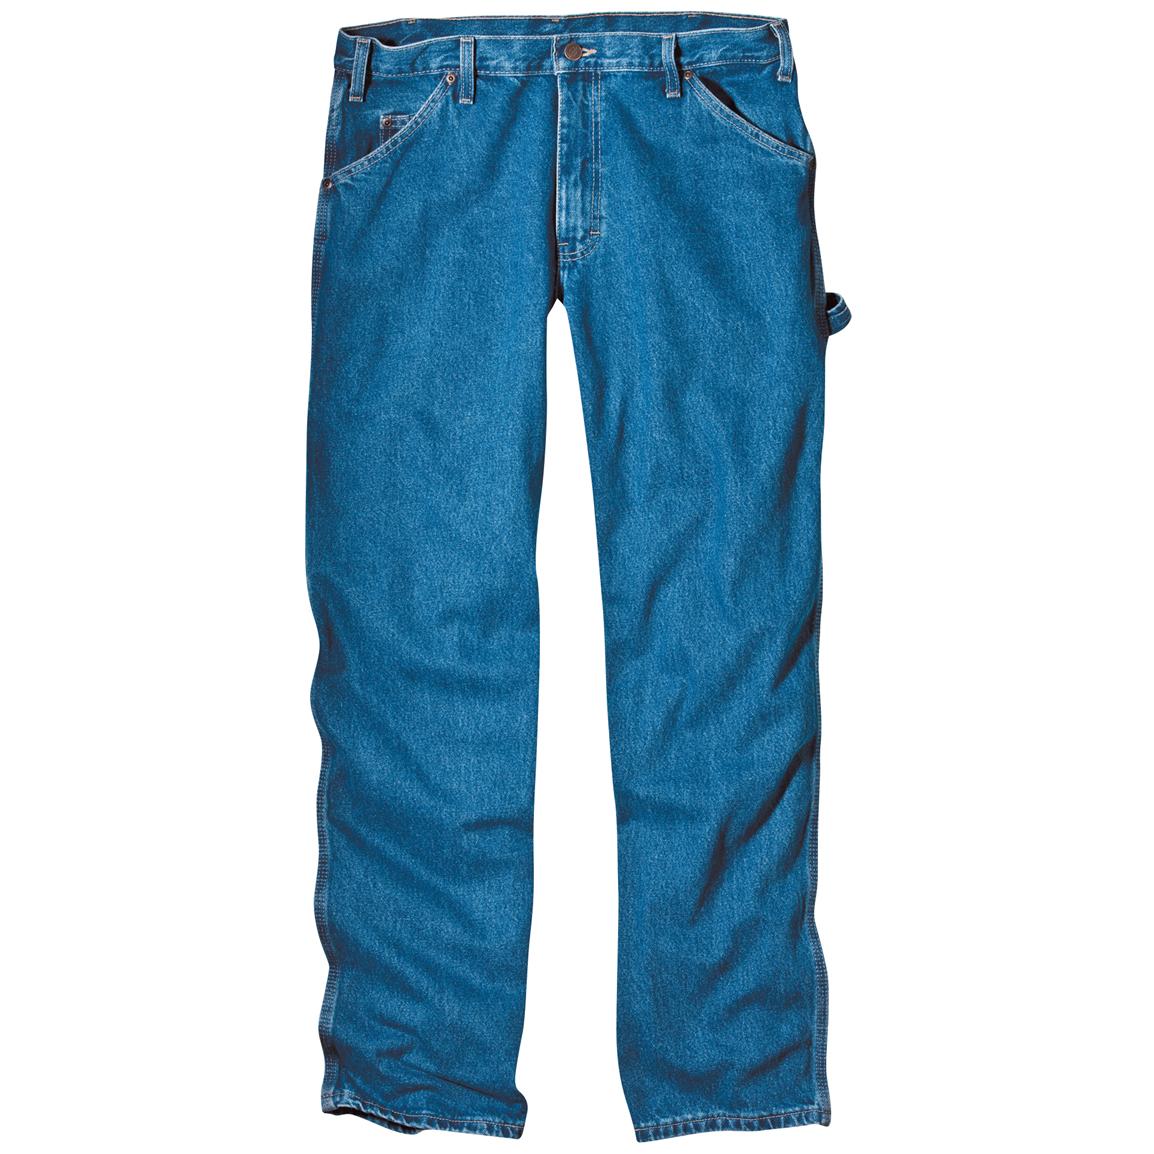 Skinny Jeans, Womenu0027s Den